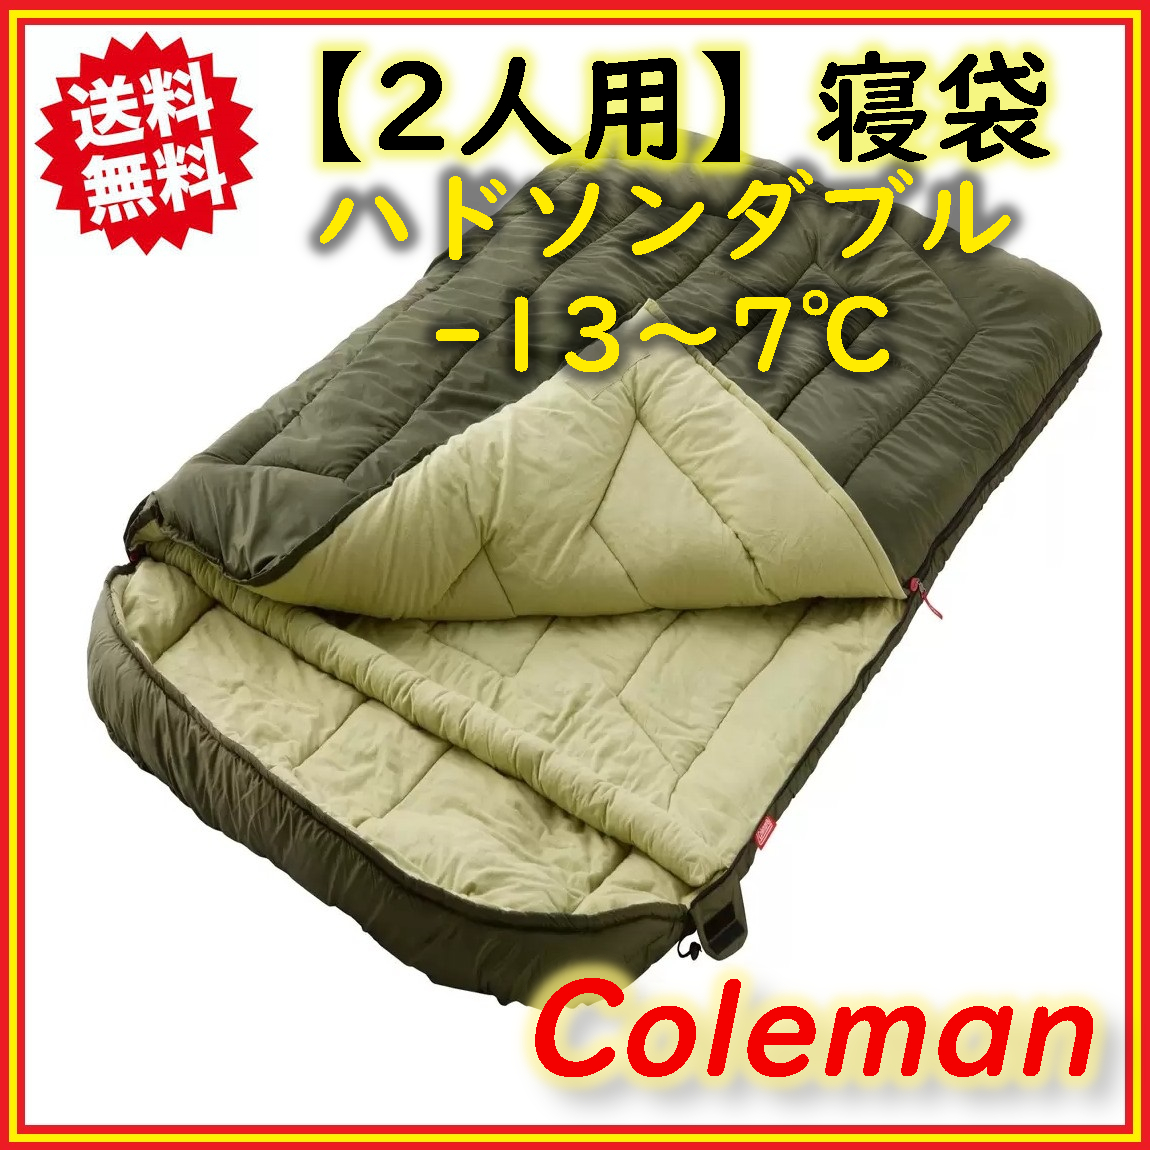 Coleman(コールマン) ハドソンダブル シュラフ 寝袋 2人用 封筒型 